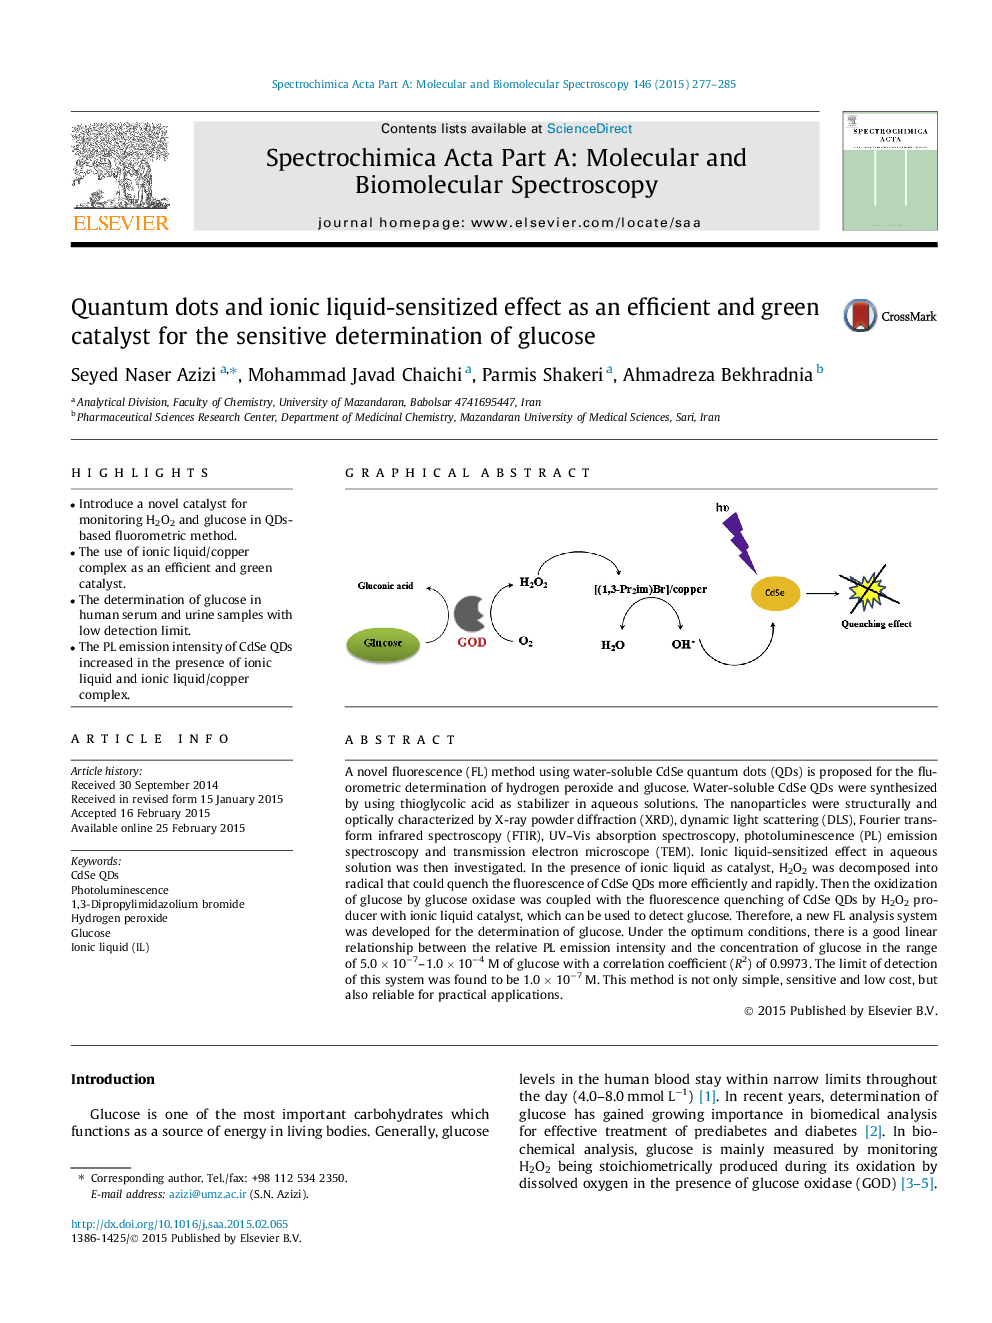 نقطه کوانتومی و تاثیر مایع حساس به یون به عنوان یک کاتالیزور کارآمد و سبز برای تعیین حساس گلوکز 